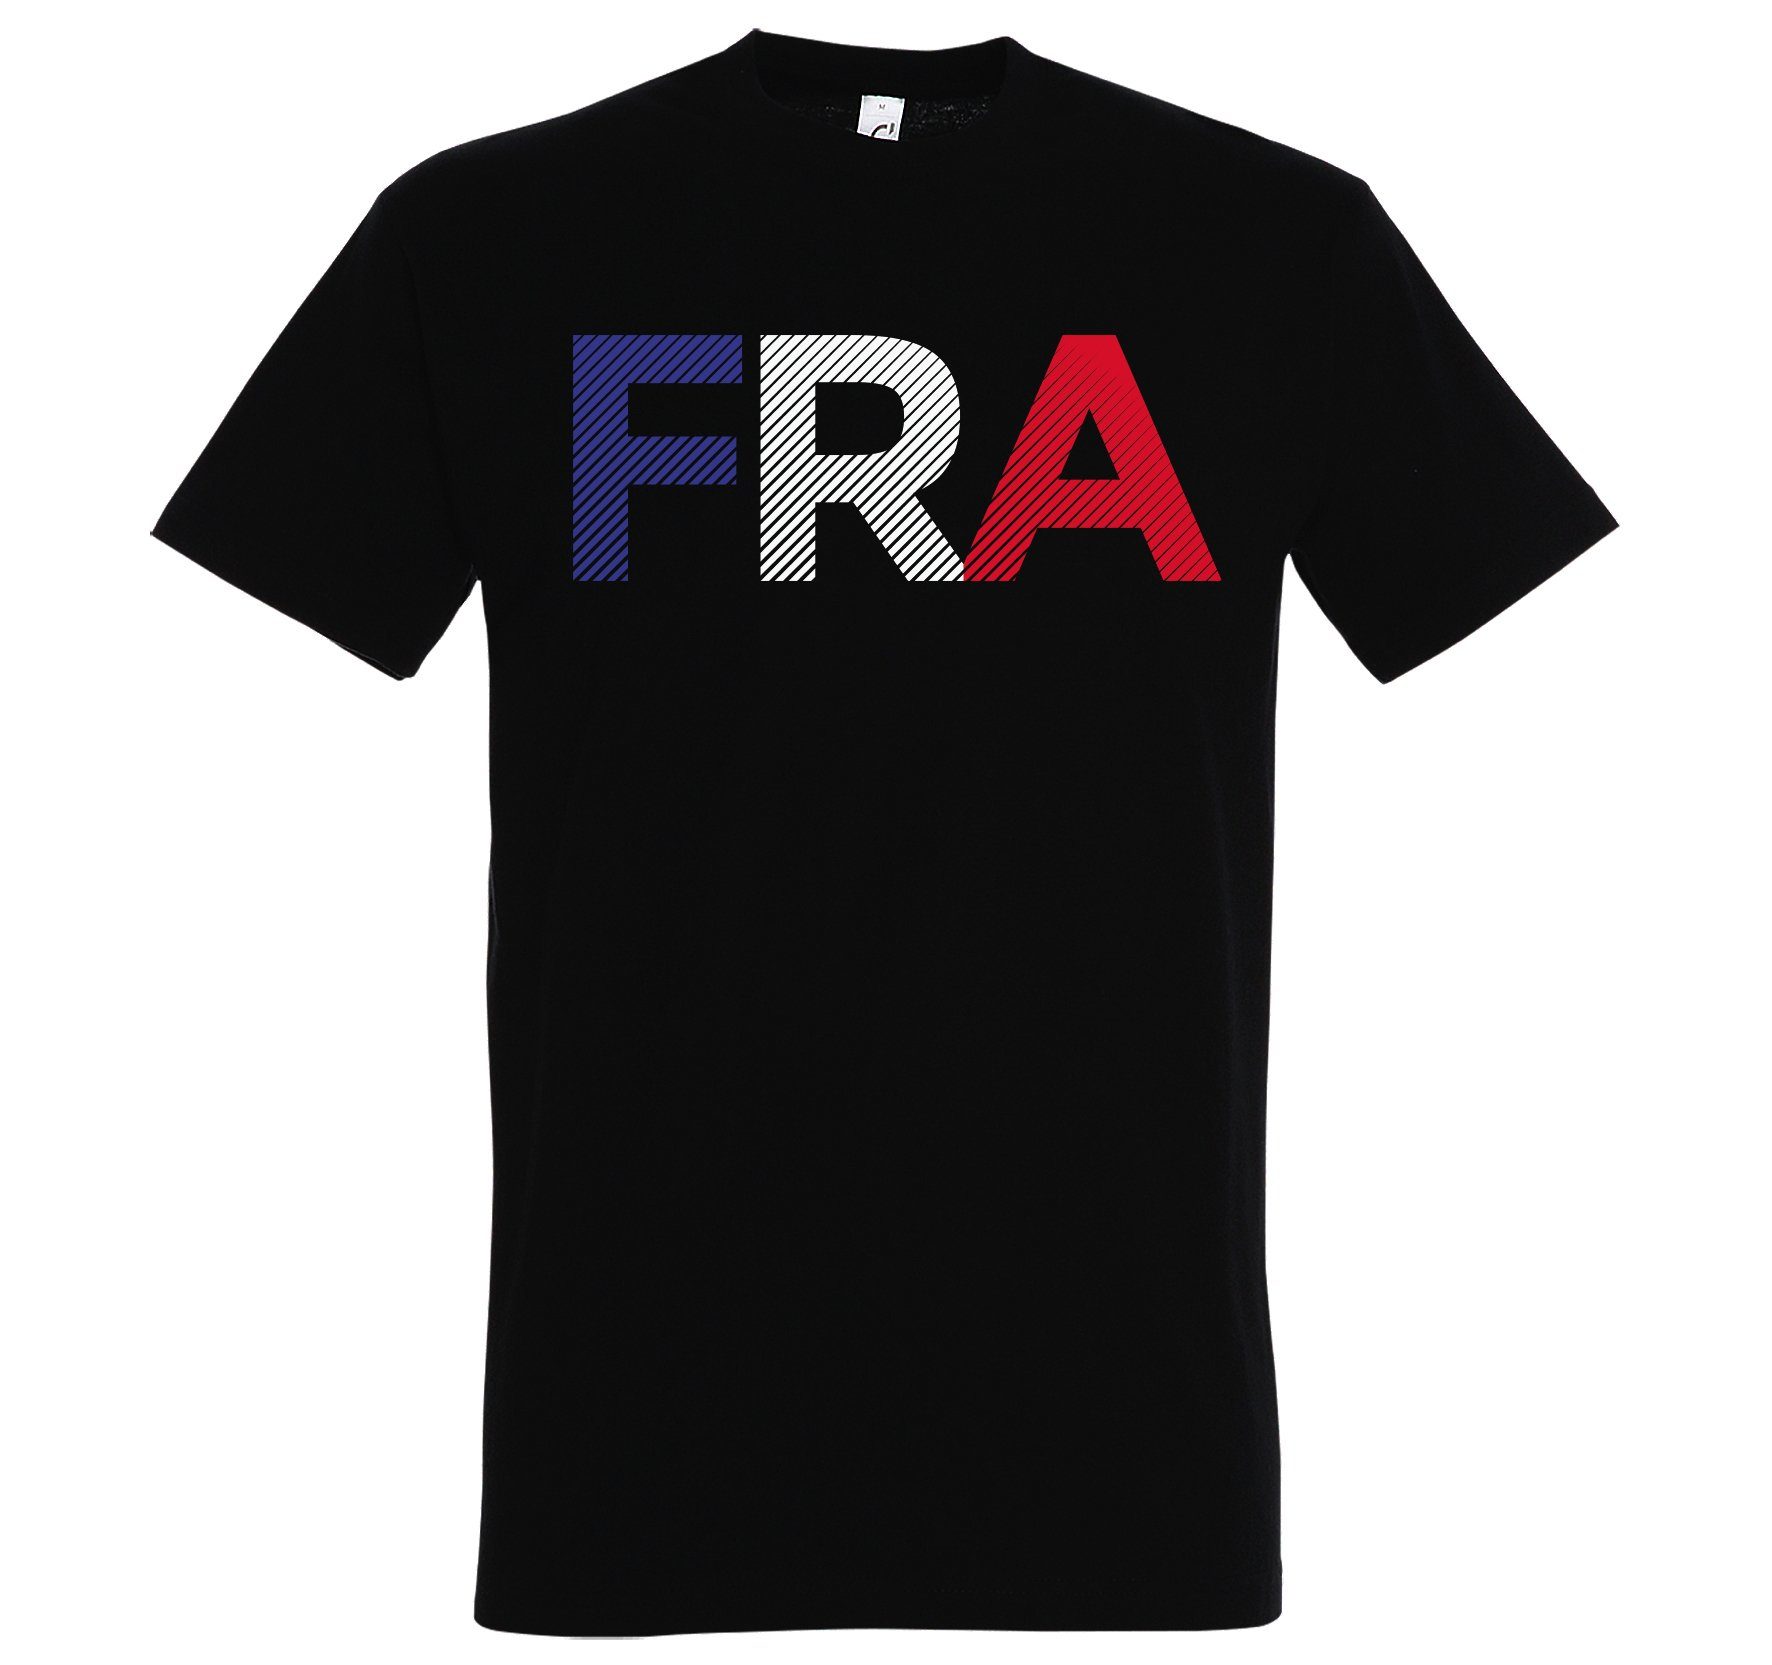 Youth Designz T-Shirt Frankreich Herren T-Shirt im Fußball Look mit Trendigem FRA Frontdruck